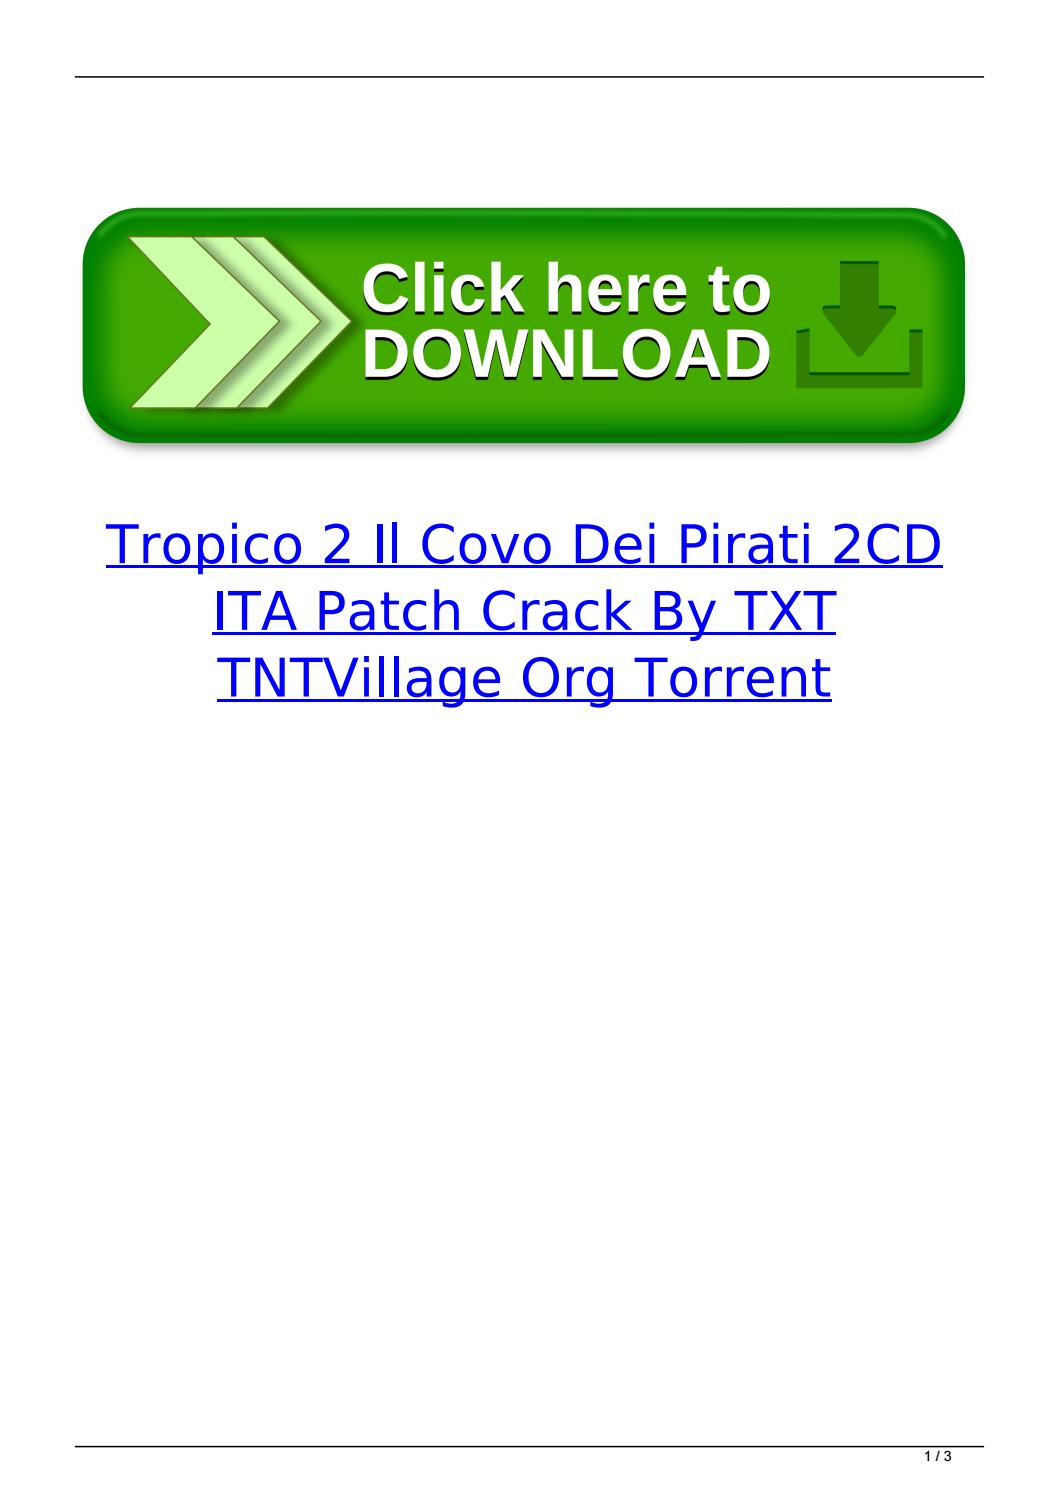 Tropico 2-il covo dei pirati-italiano-by txt download